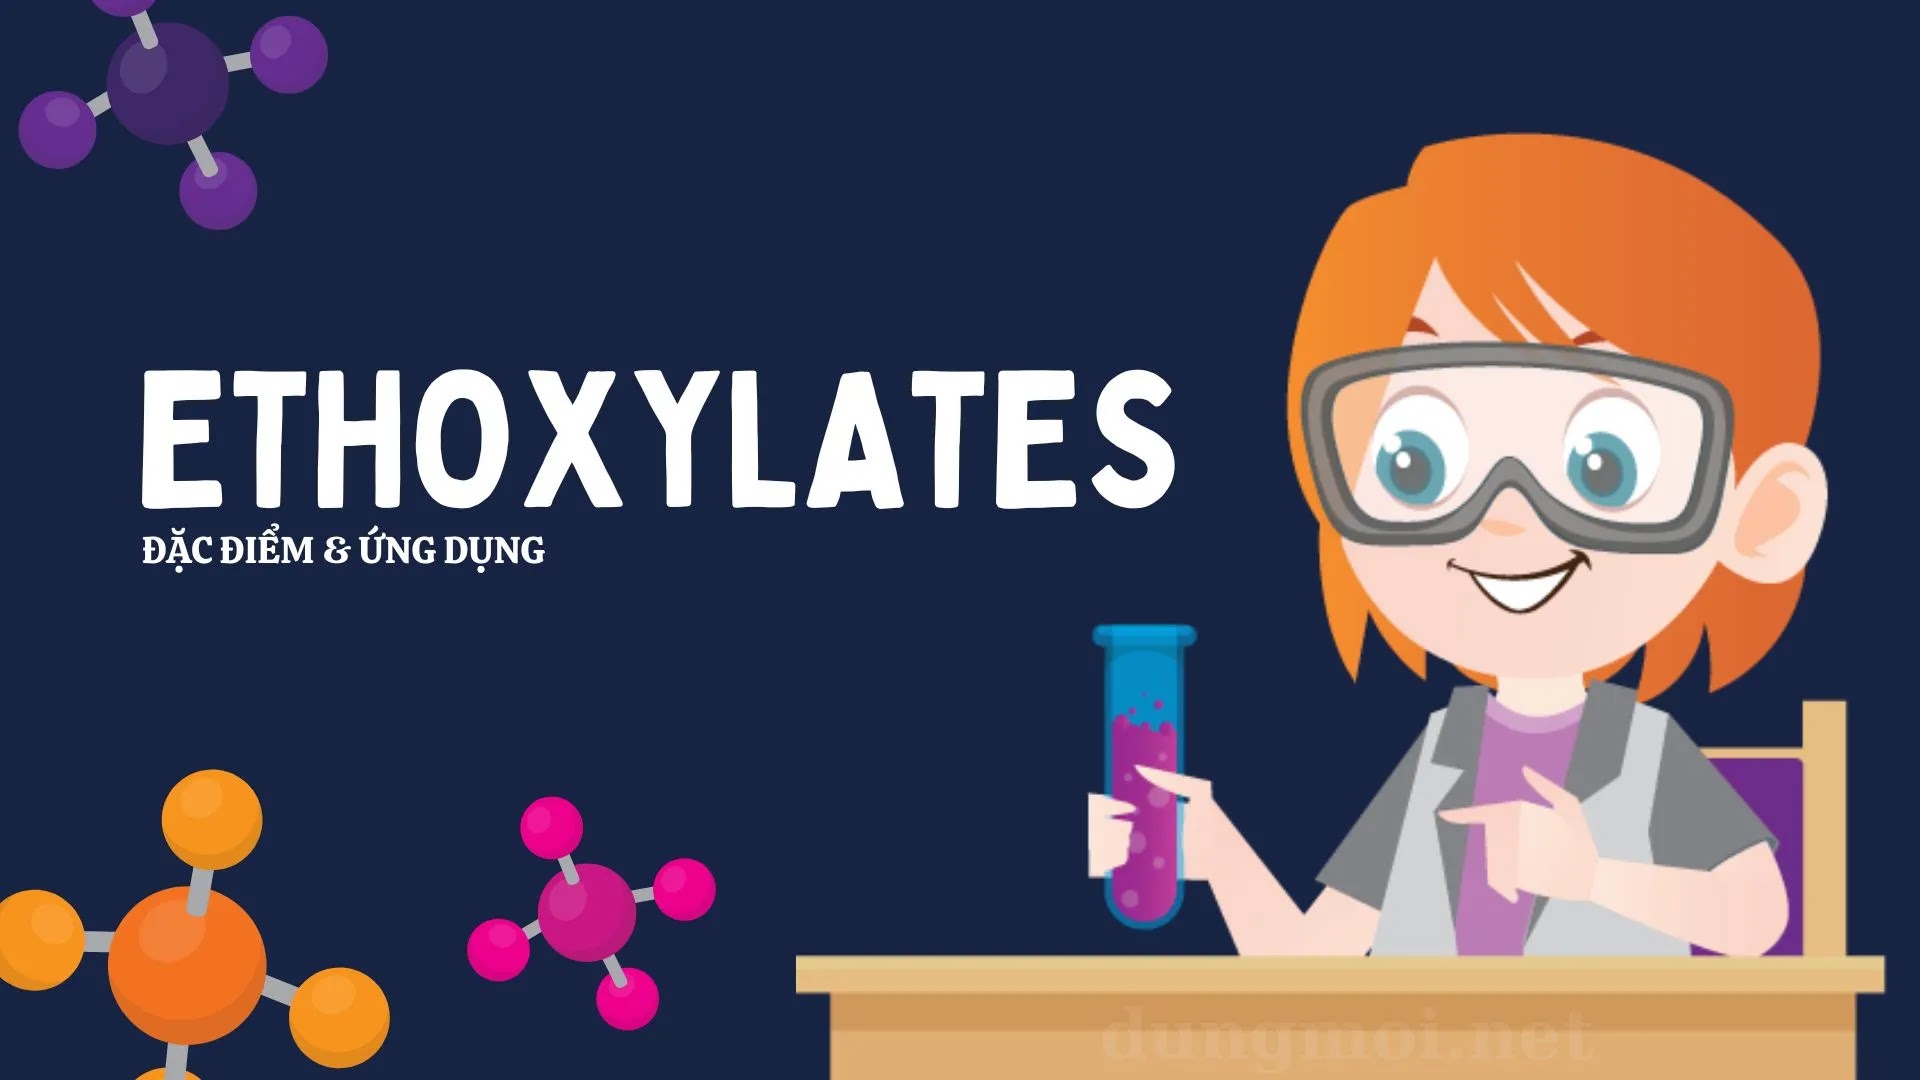 Ethoxylates là gì, đặc điểm và ứng dụng của nó?